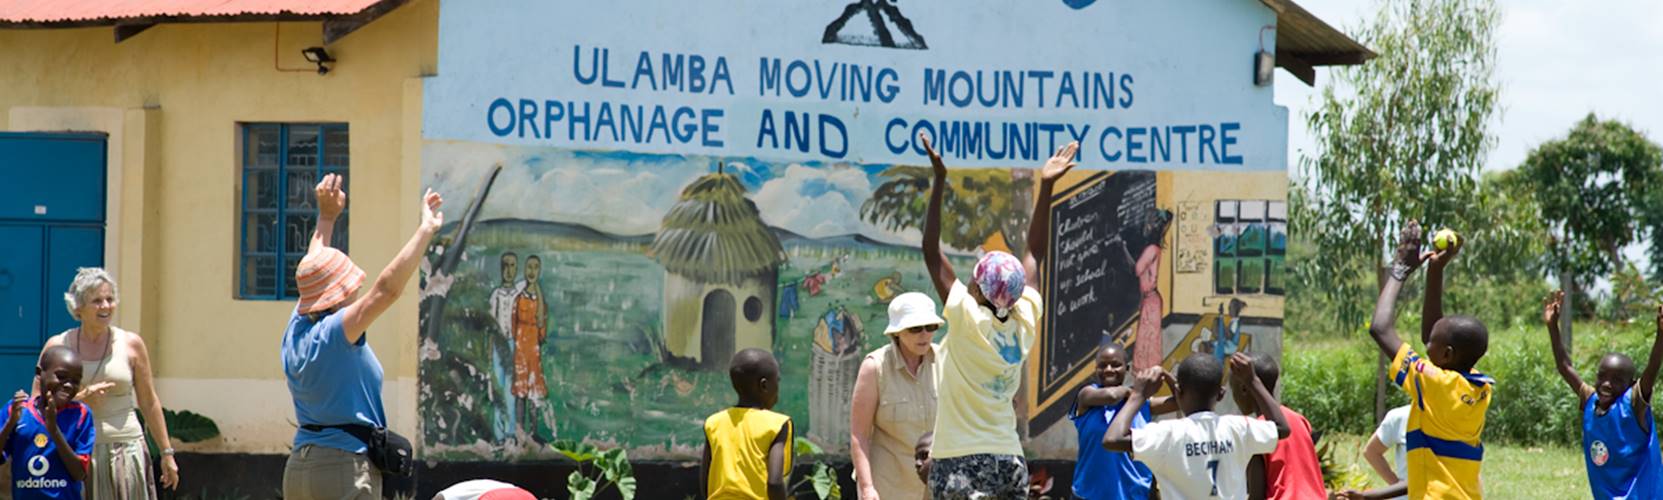 Moving Mountains Kenya Ulamba Children's Home